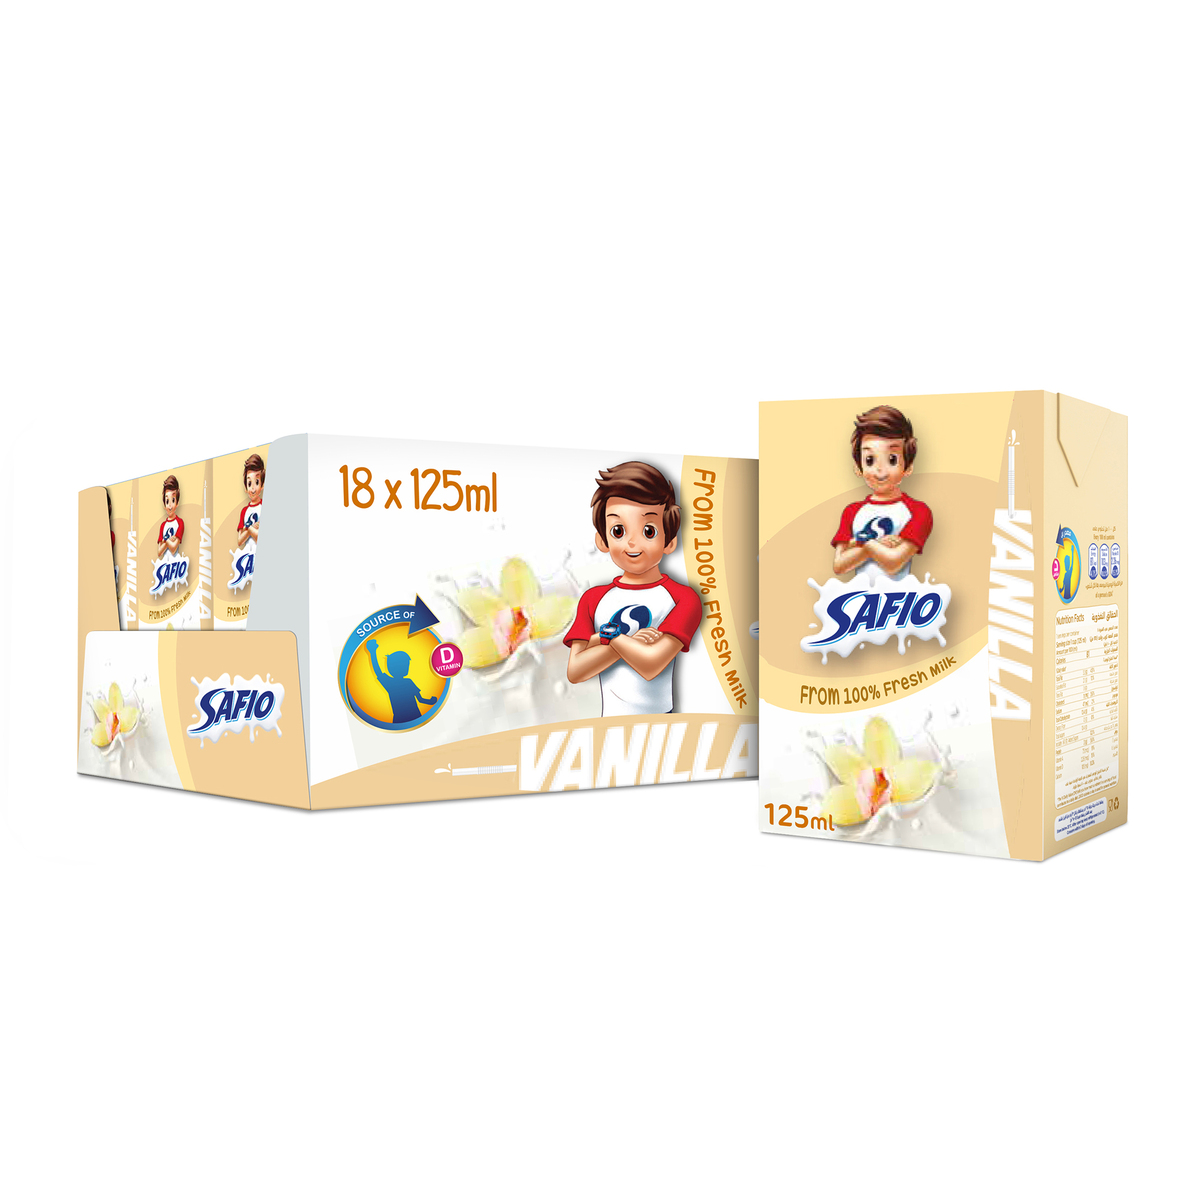 Safio UHT Milk Vanilla Flavor 6 x 125ml